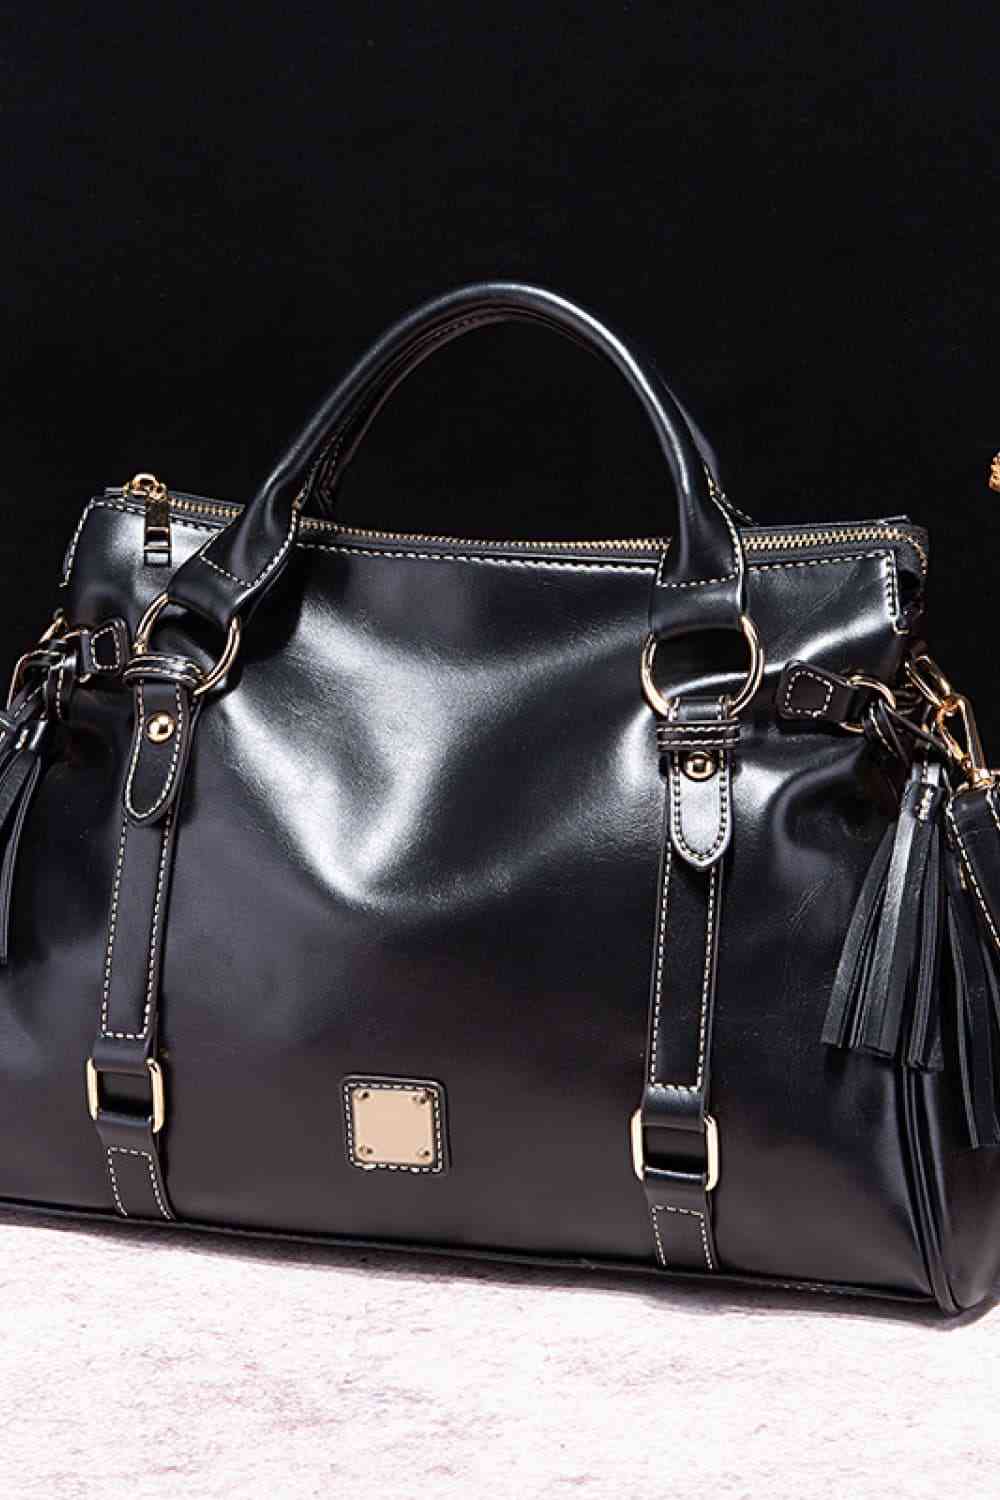 TEEK - PU Leather Handbag with Tassels BAG TEEK Trend Black  